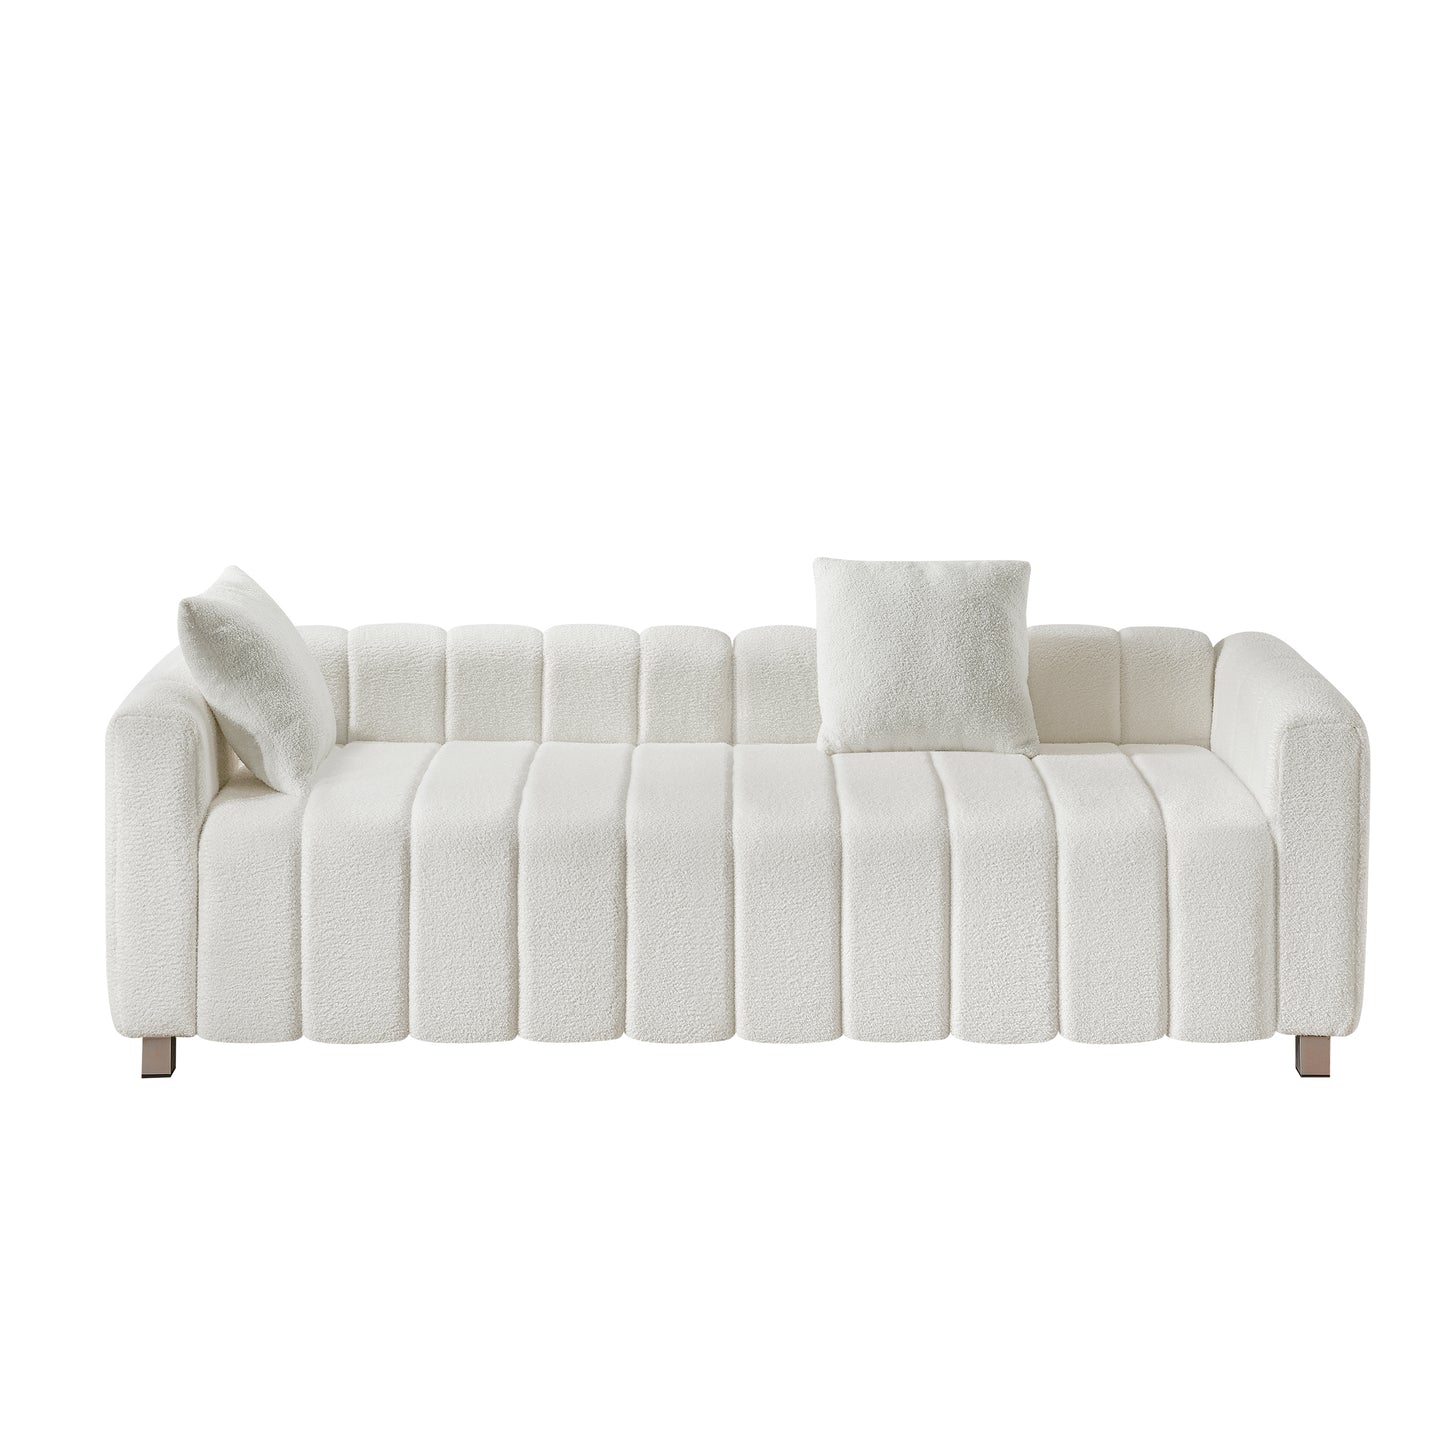 Velvet Sofa, Living Room, Bedroom, Apartment, White